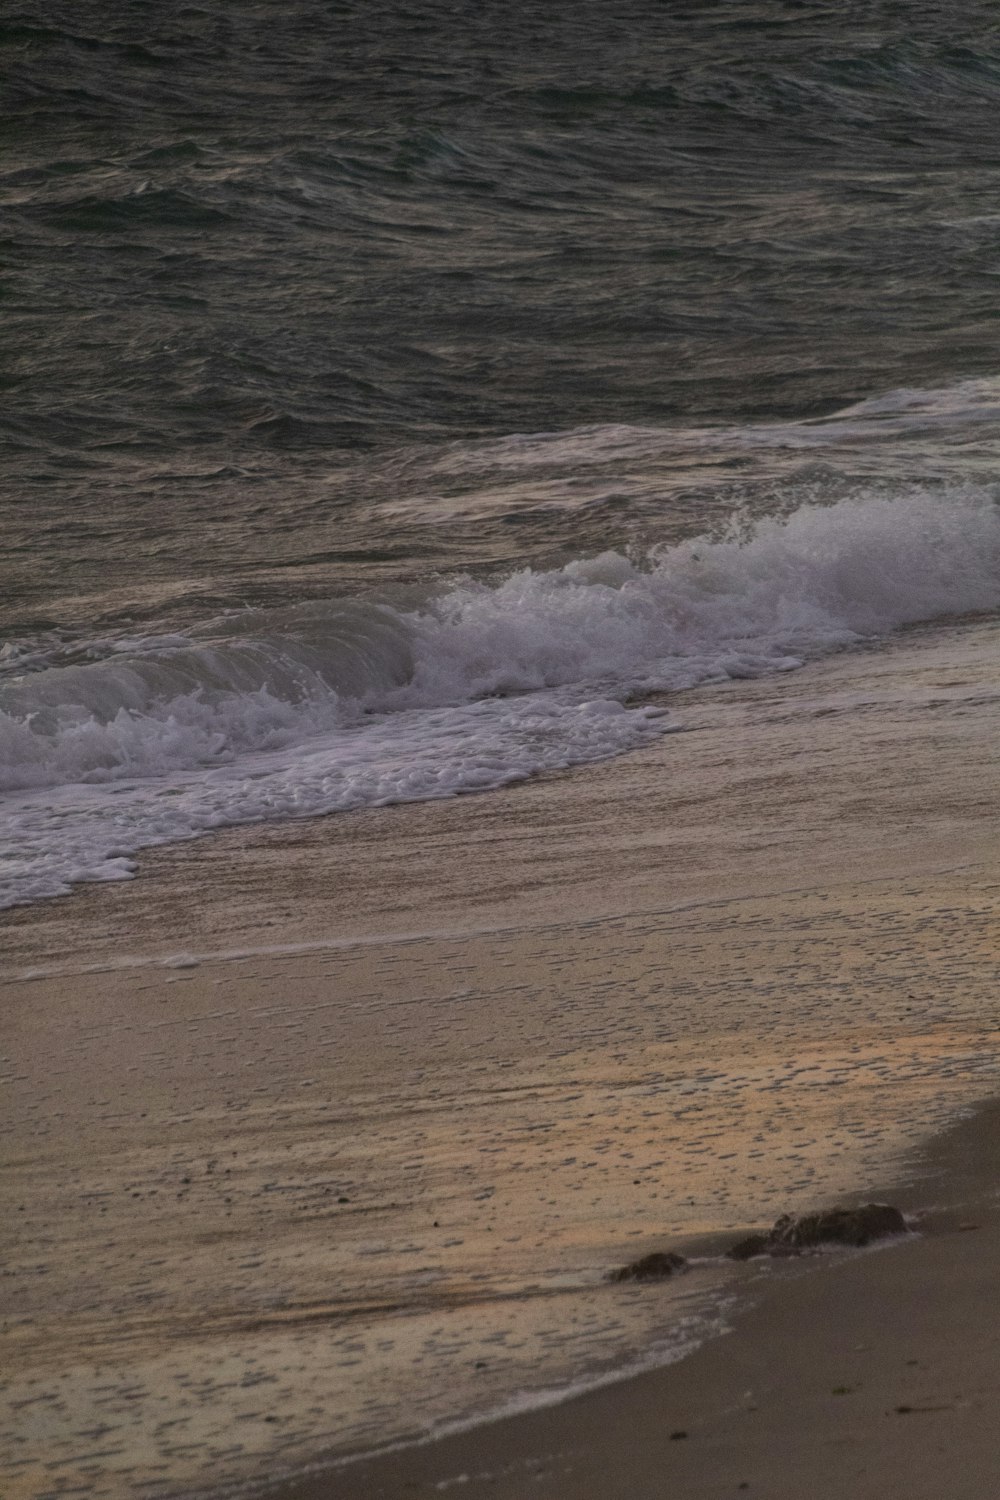 onde che si infrangono su una spiaggia